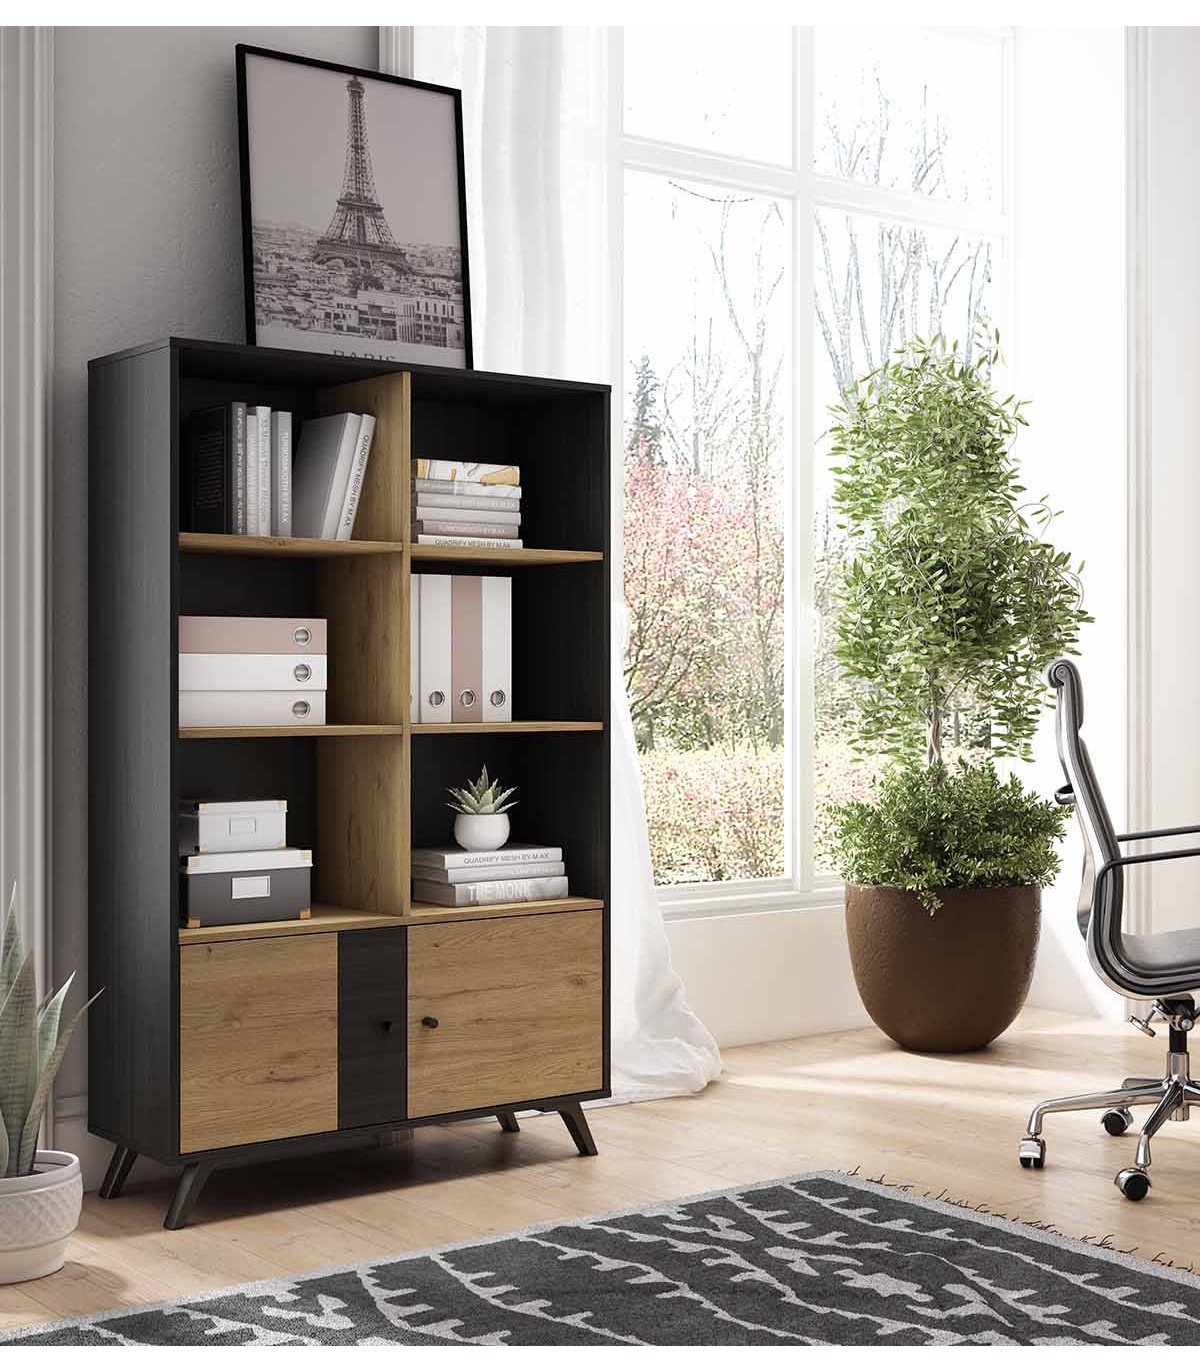 Comprar estantería mueble kit barata para habitacion moderna